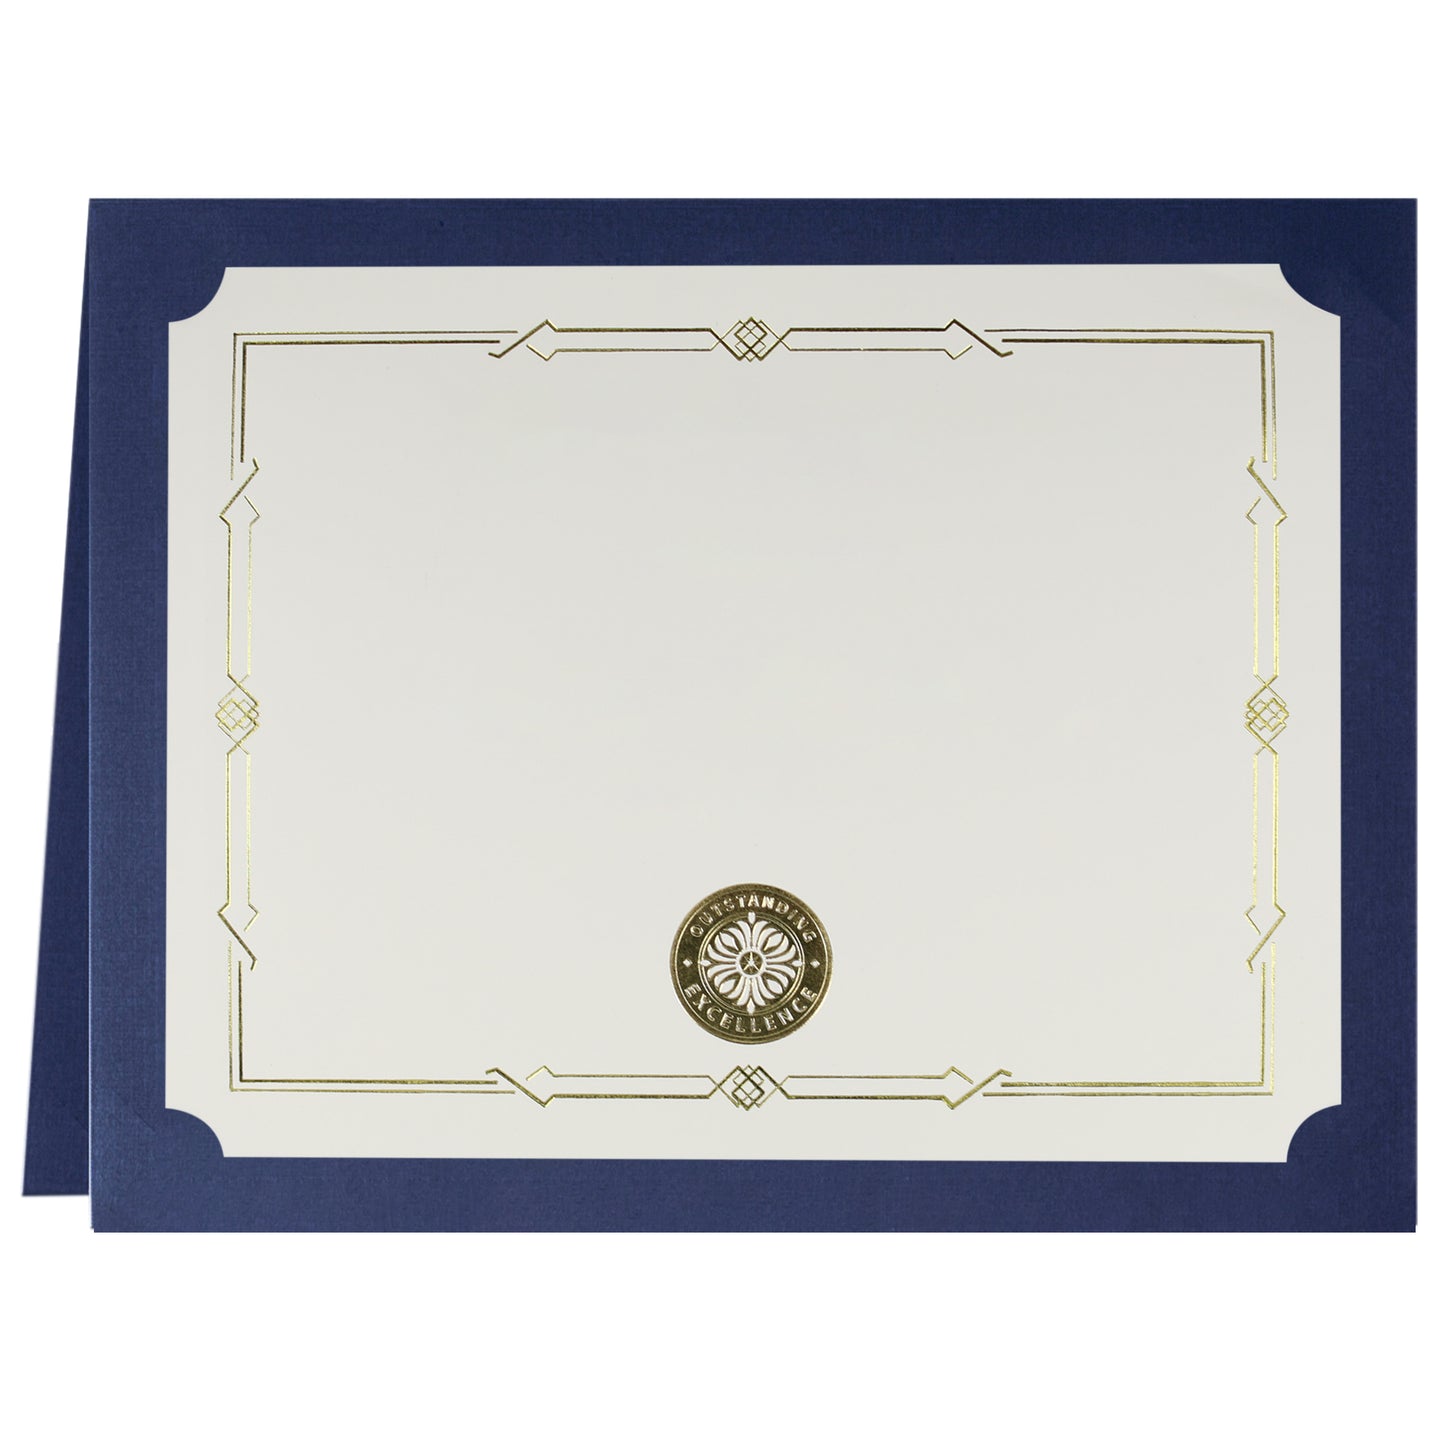 St. James® Porte-certificats/Couvertures de documents/Porte-diplômes, Bleu marine, Bordure en feuille d'or, Finition lin, Paquet de 5, 83806